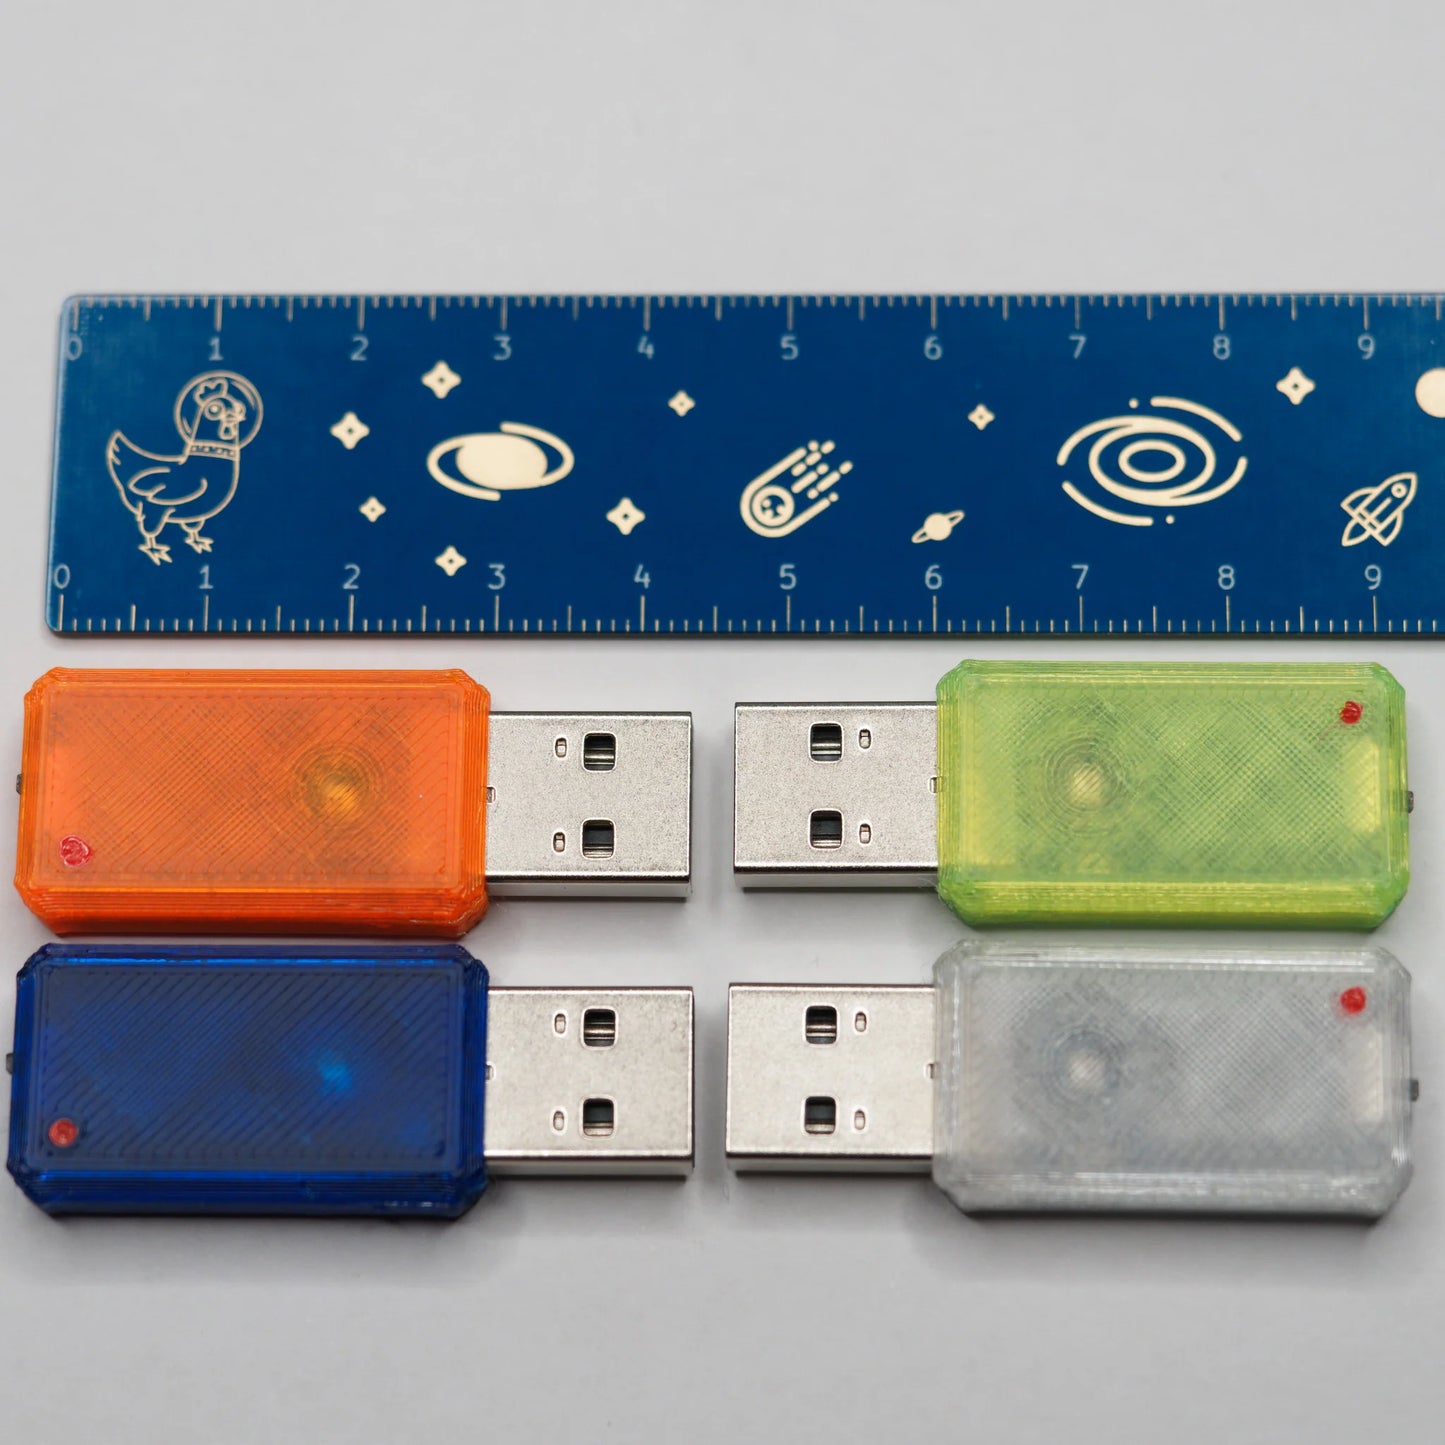 Spacehuhn USB Nova (USB-A)